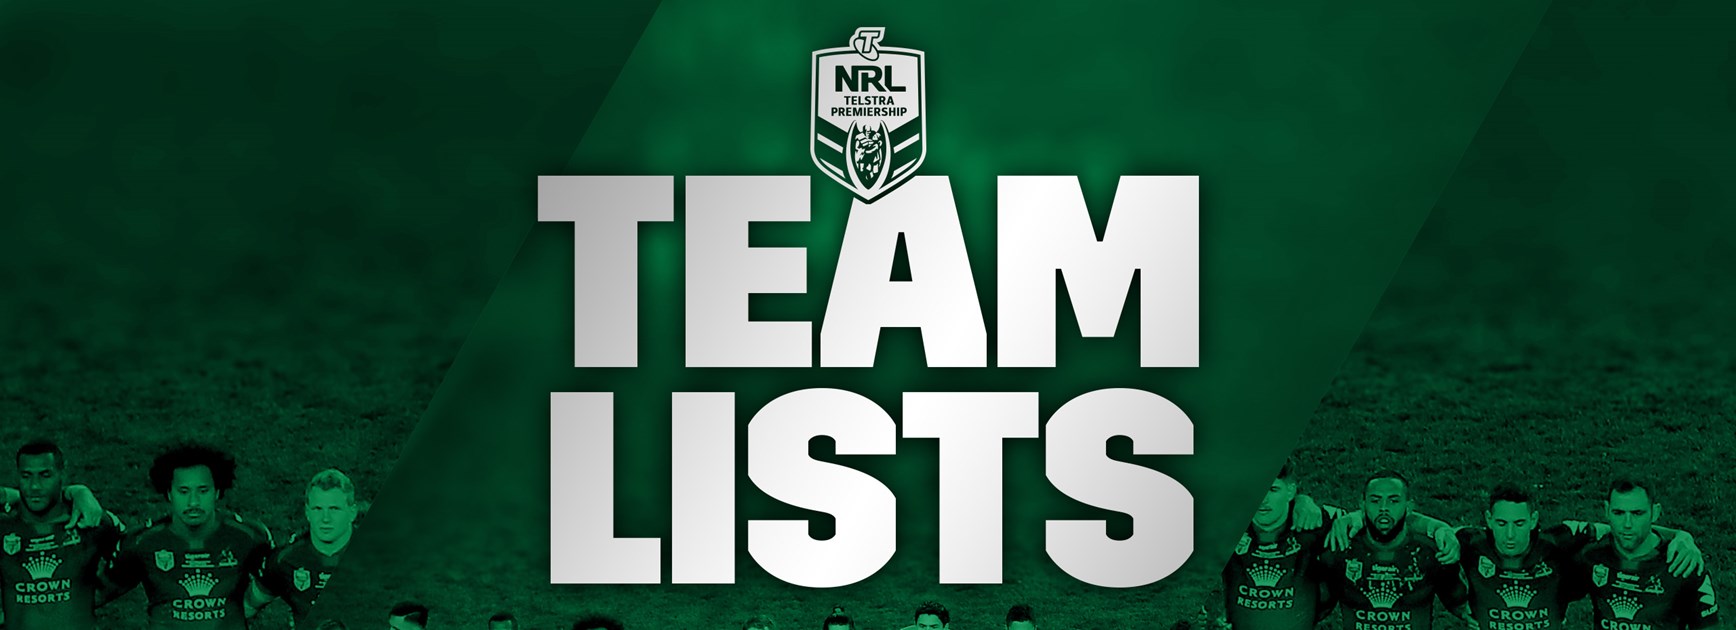 Updated Round 7 NRL team lists